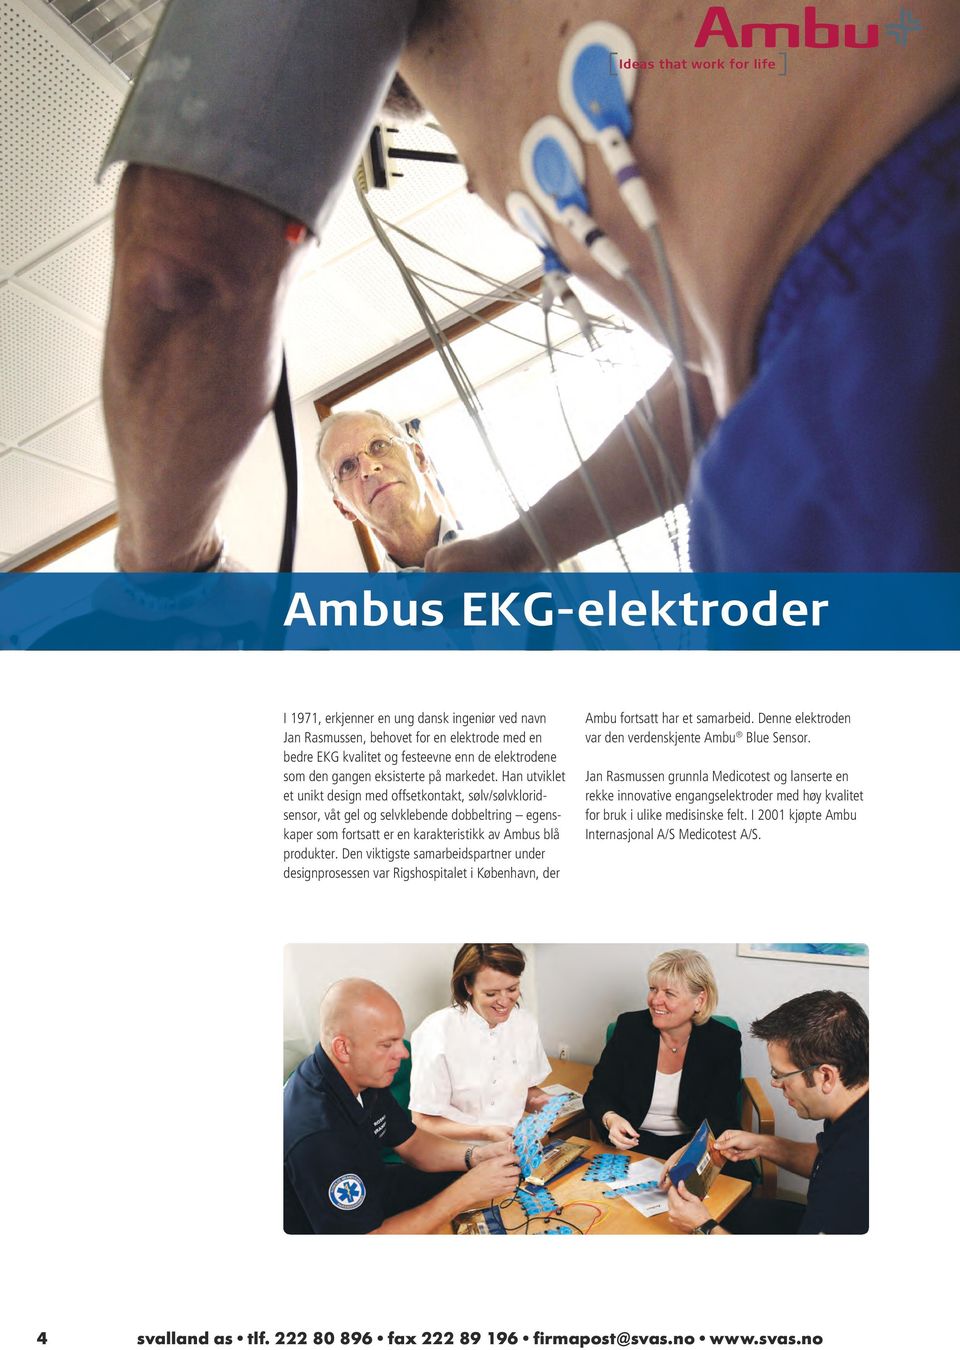 Den viktigste samarbeidspartner under designprosessen var Rigshospitalet i København, der Ambu fortsatt har et samarbeid. Denne elektroden var den verdenskjente Ambu Blue Sensor.